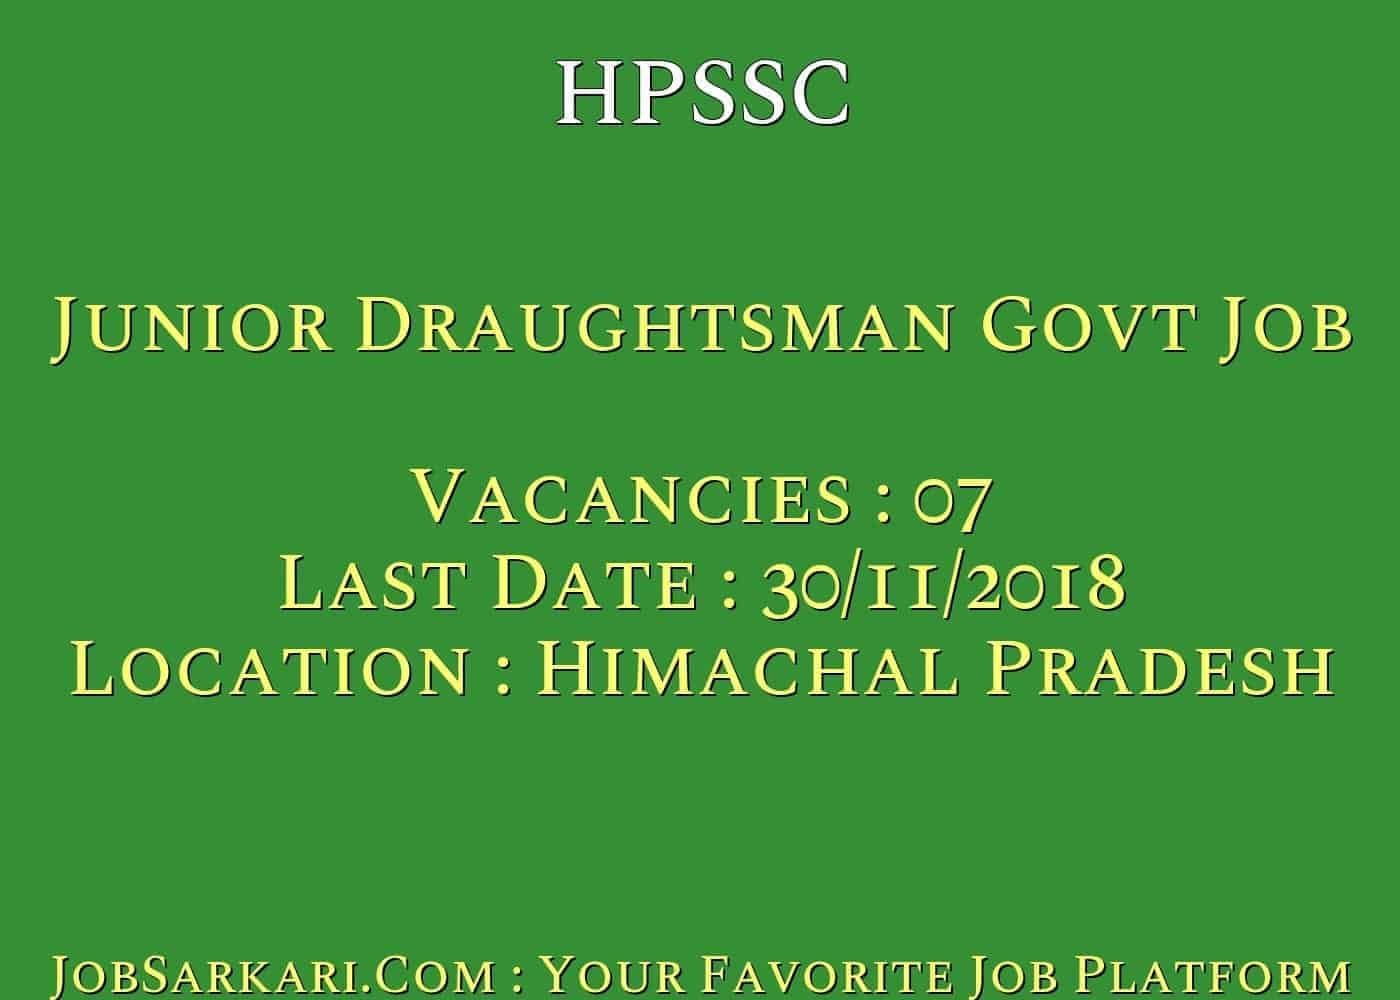 HPSSC Recruitment 2018 for Junior Draughtsman Govt Job